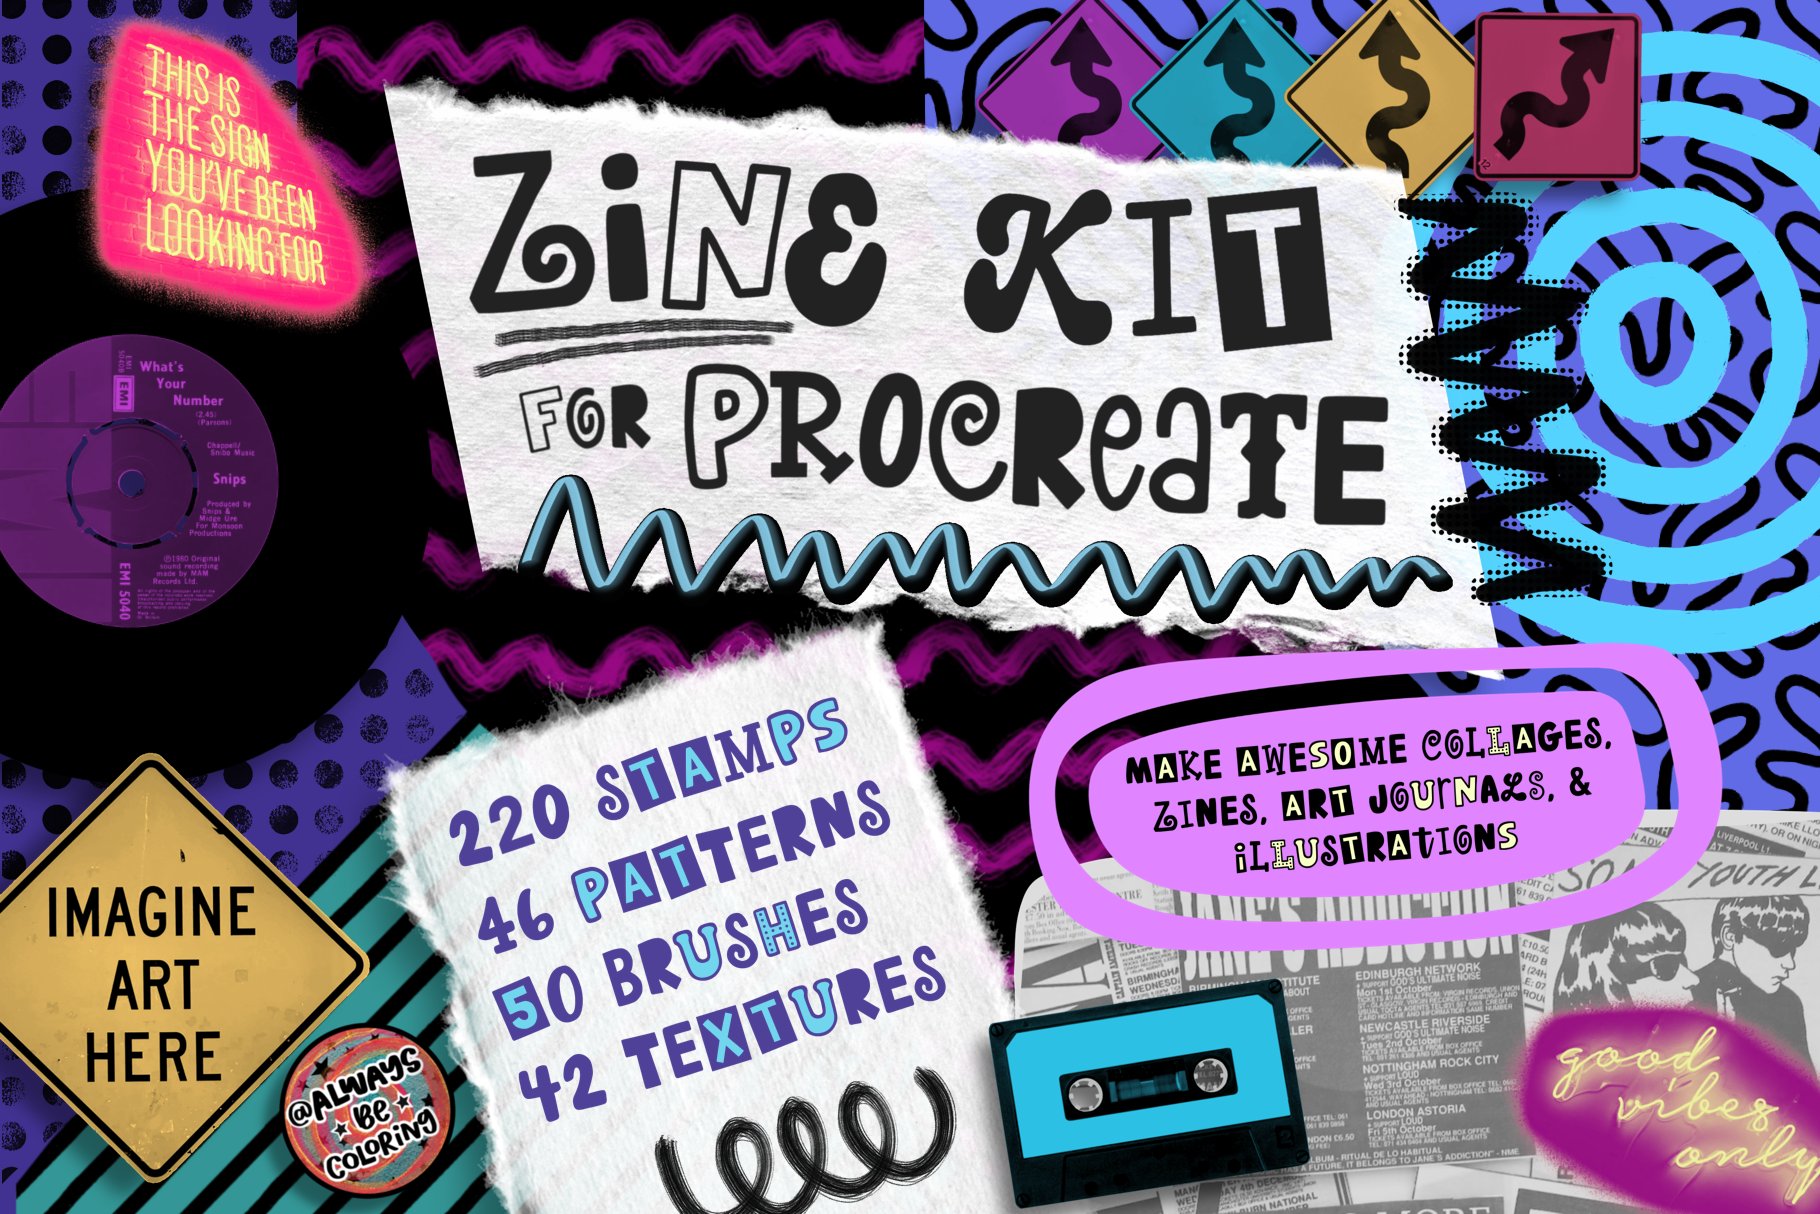 Procreate Zine Kit with 350 Brushes! 超350种画笔和图章带纹理图案、着色器、标记和刻字画笔、半色调、字母和文字图章以及逼真拼贴图章 图片素材 第1张